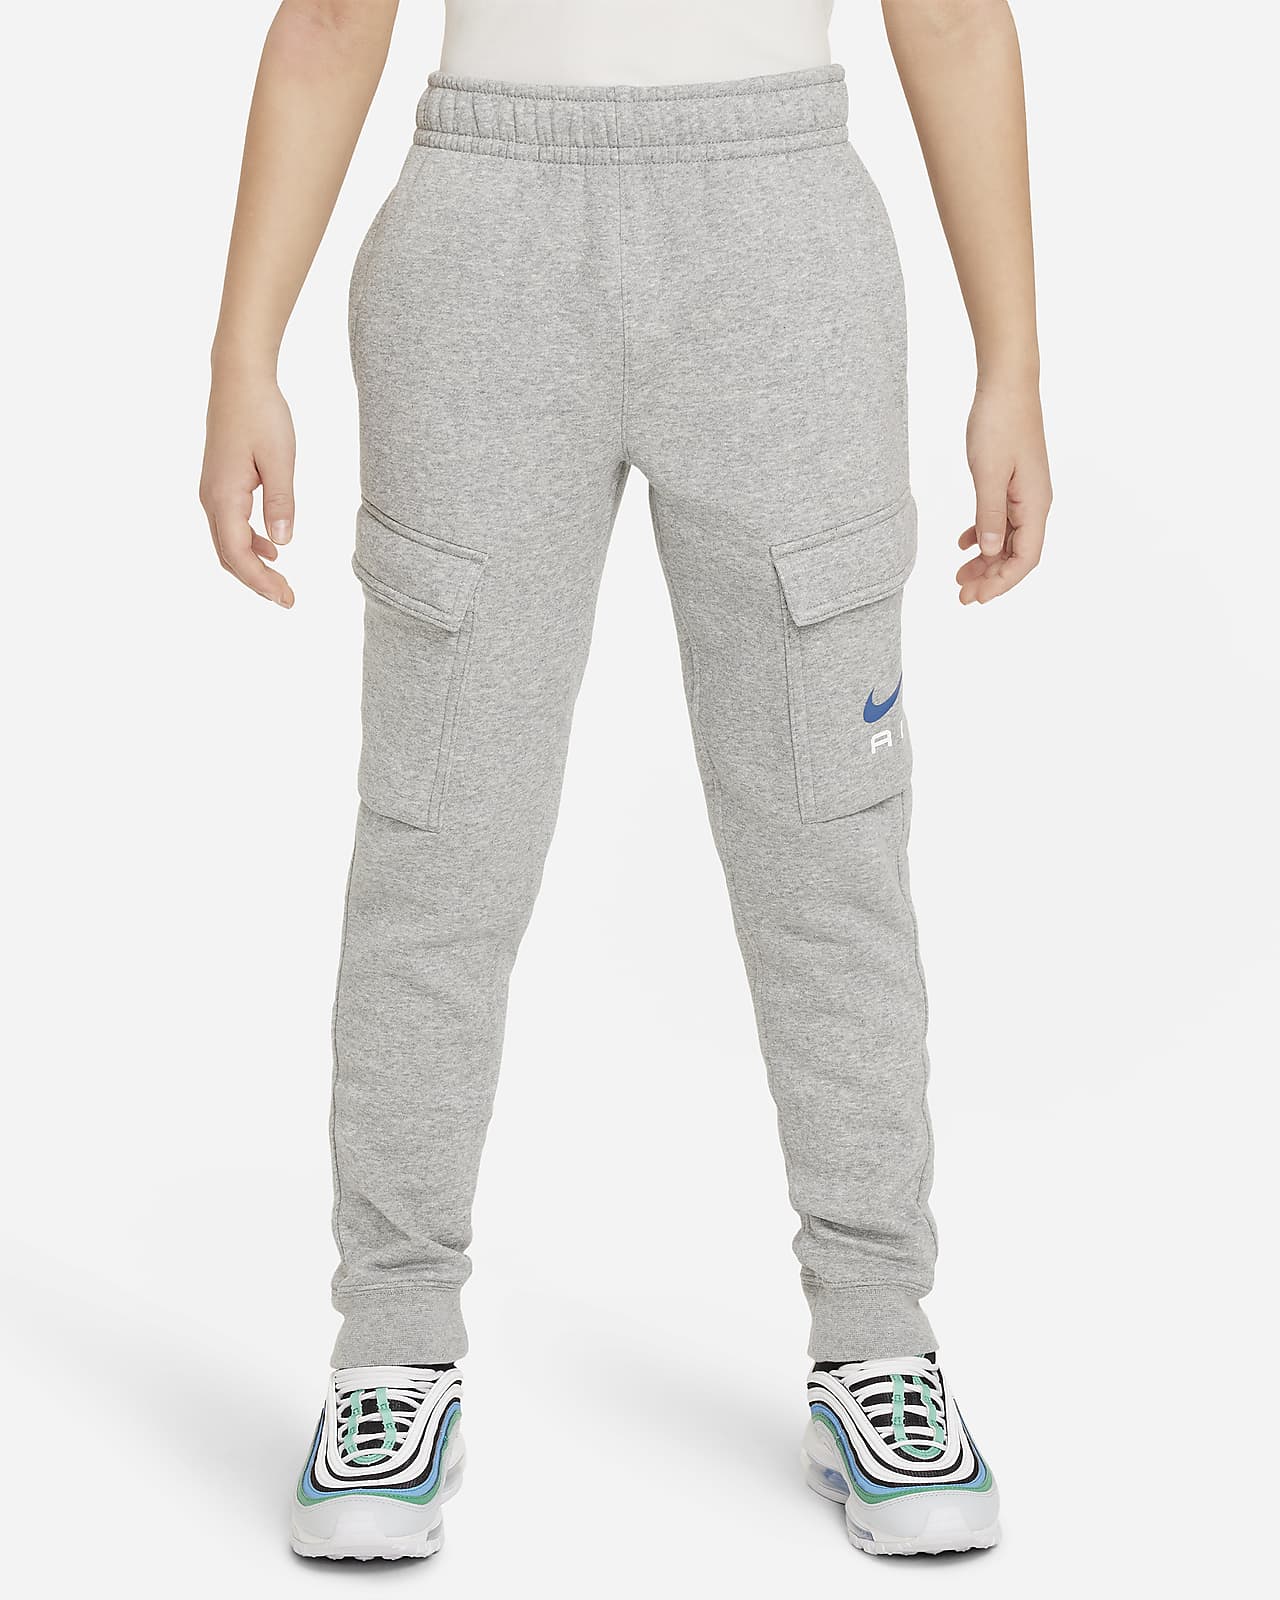 Pantaloni cargo in fleece Nike Air – Ragazzo/a